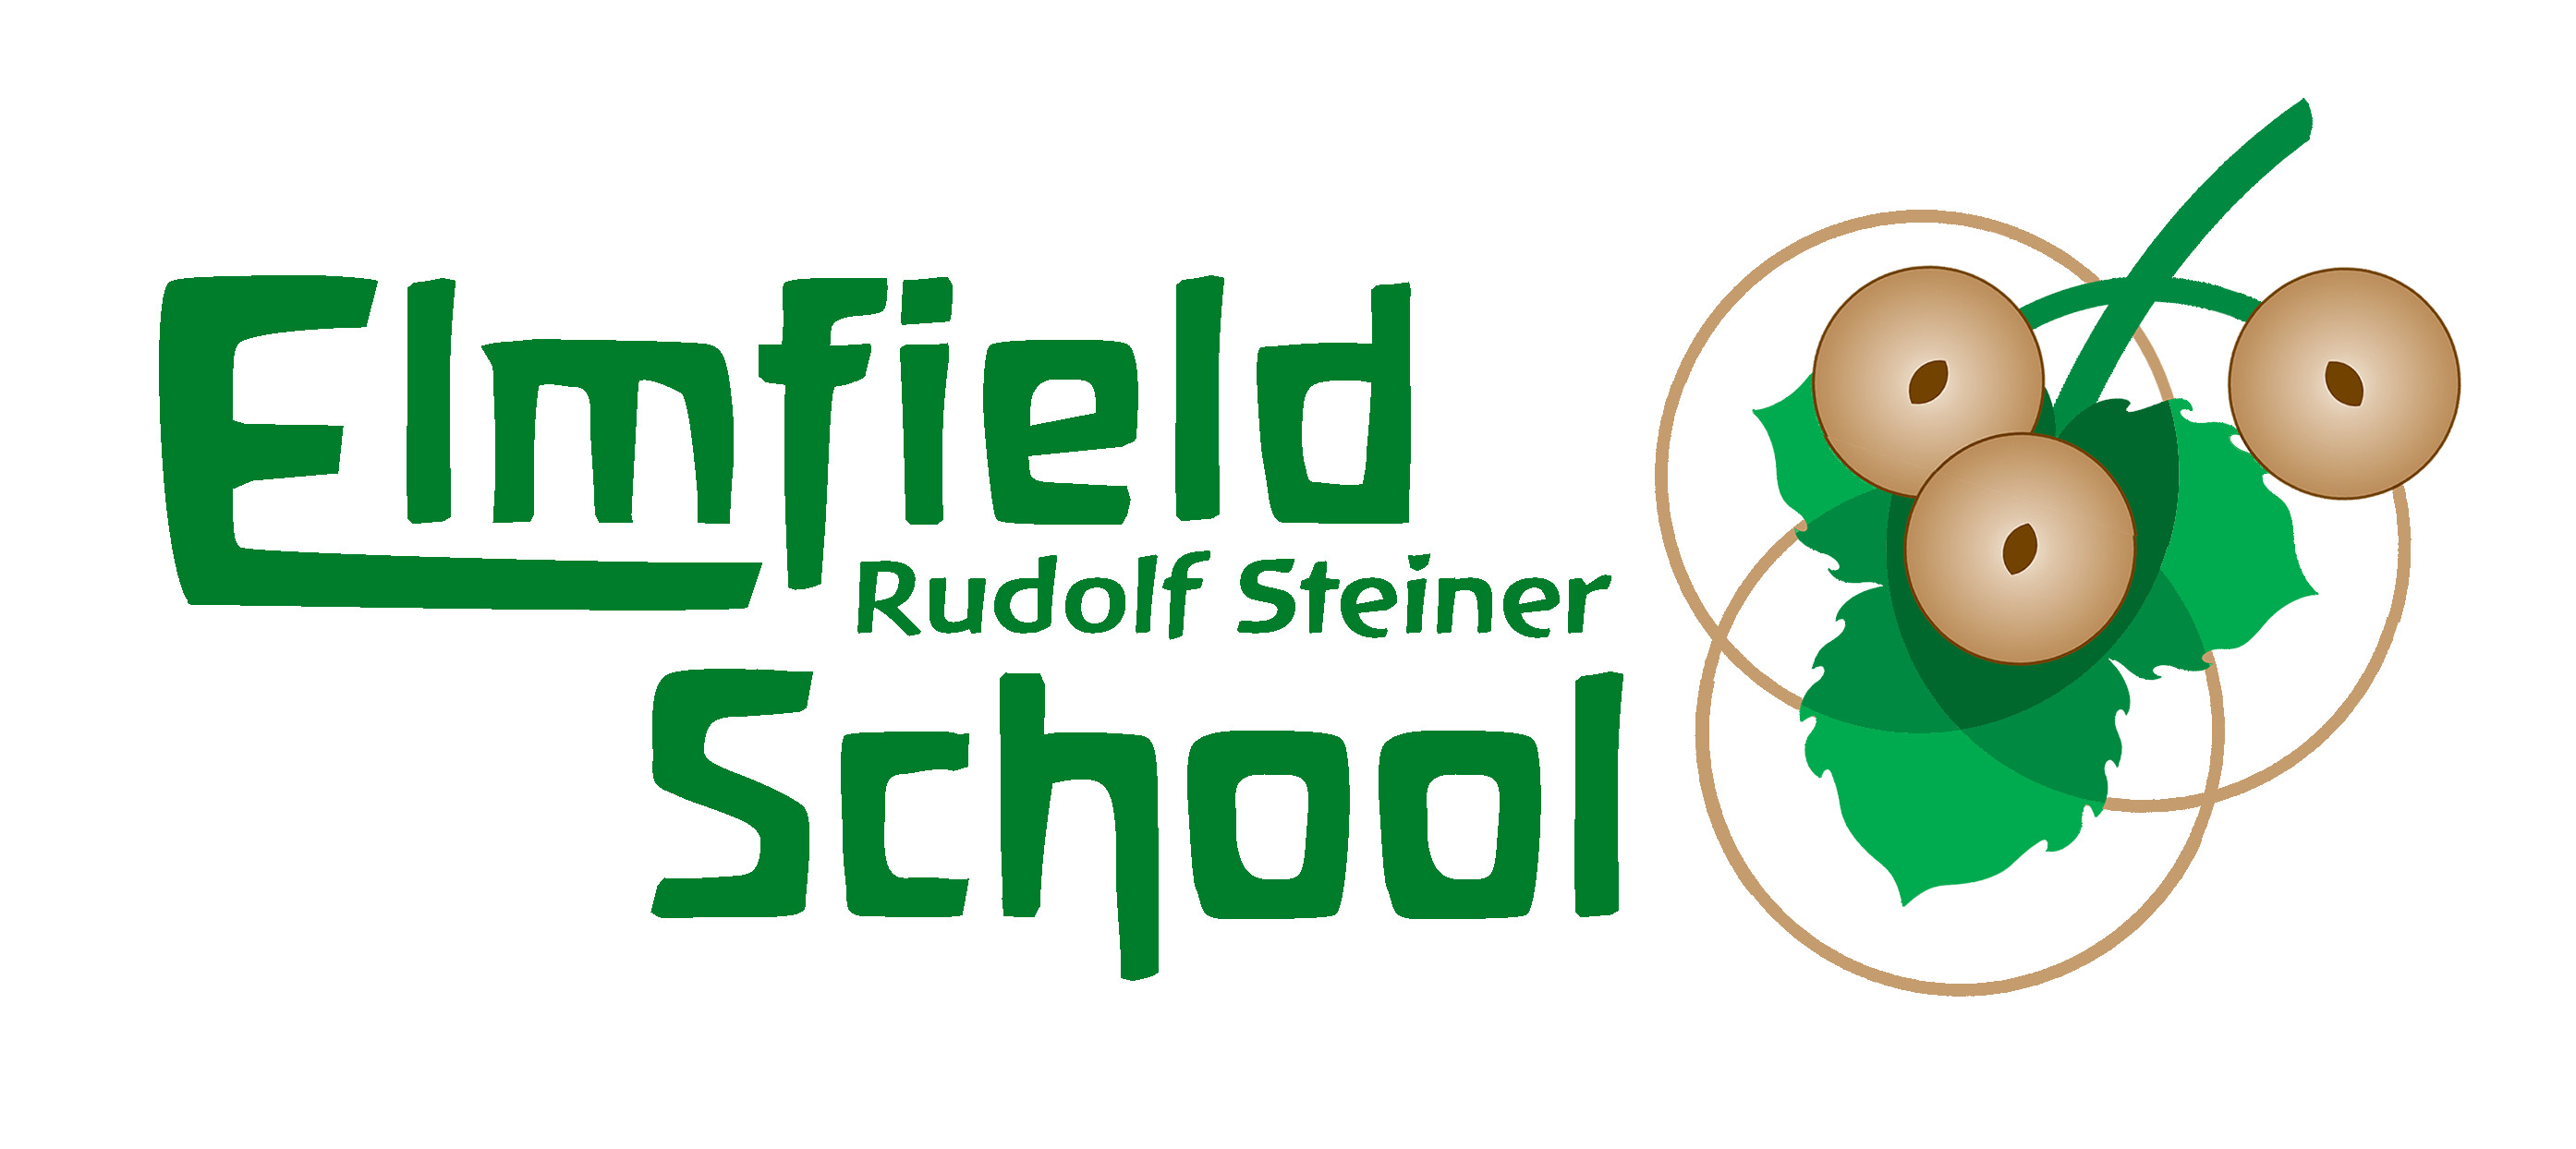 Elmfield Rudolf Steiner School